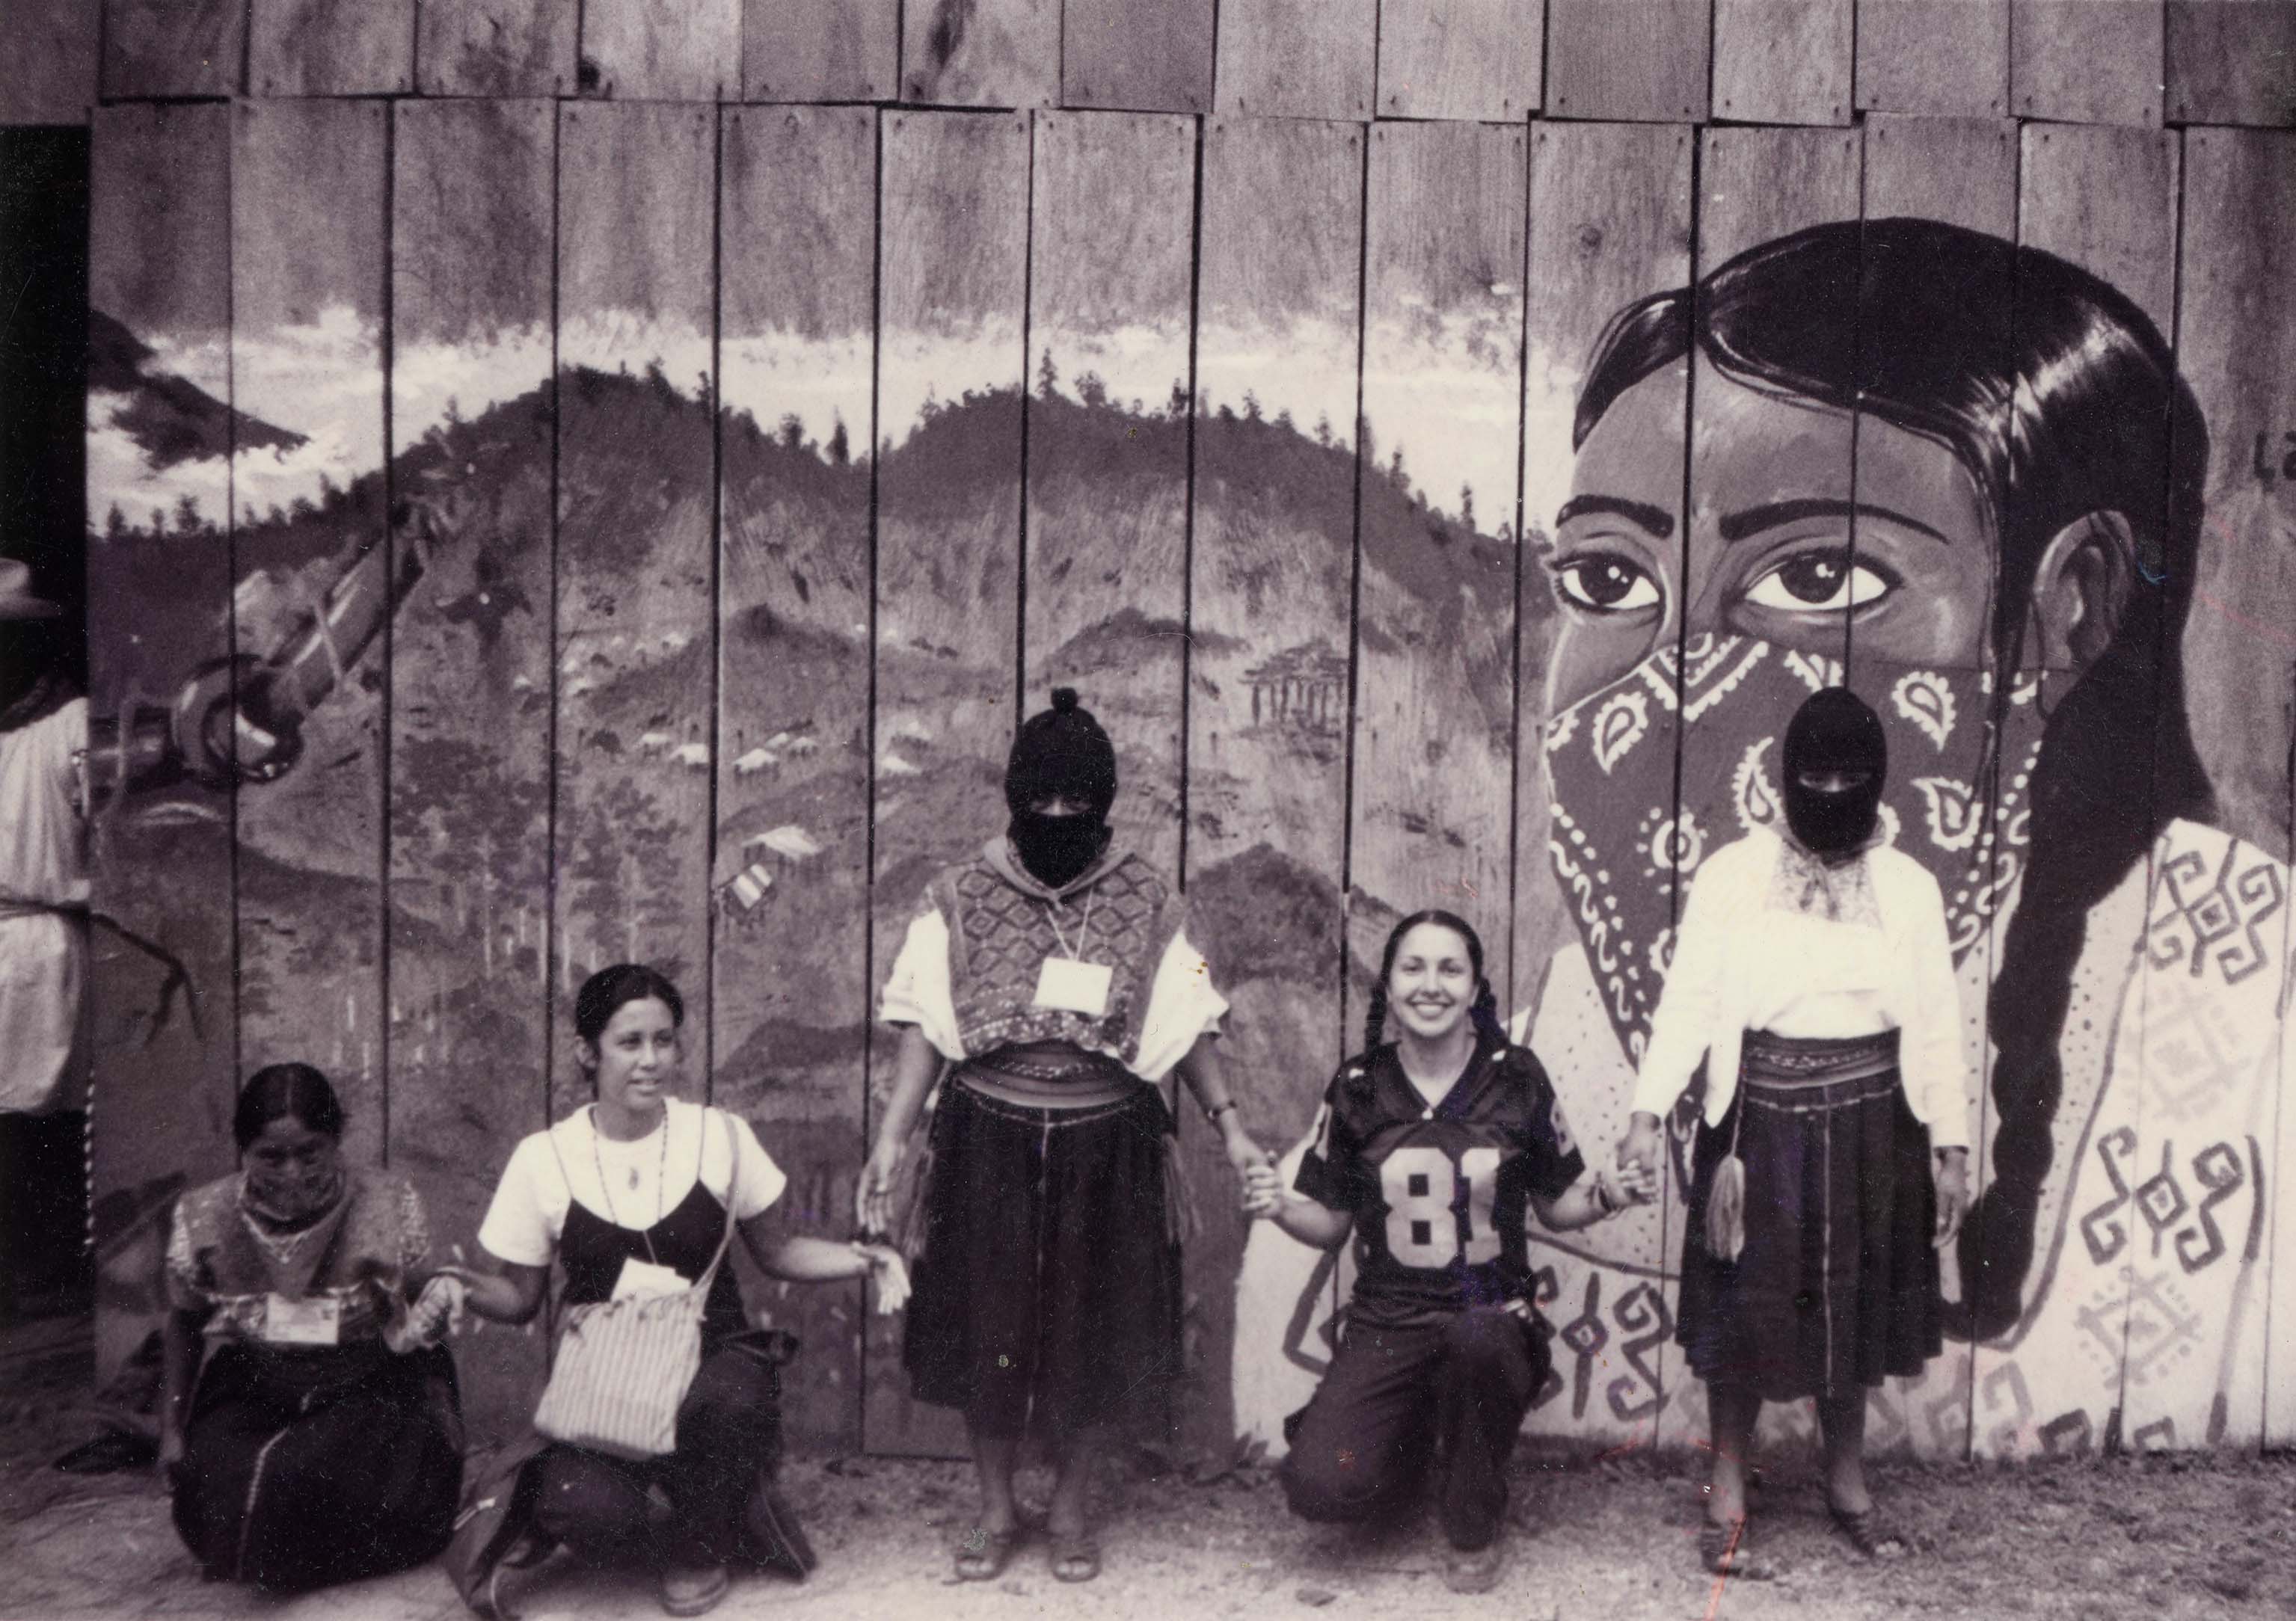 Felicia Montes with Zapatistas in Chiapas